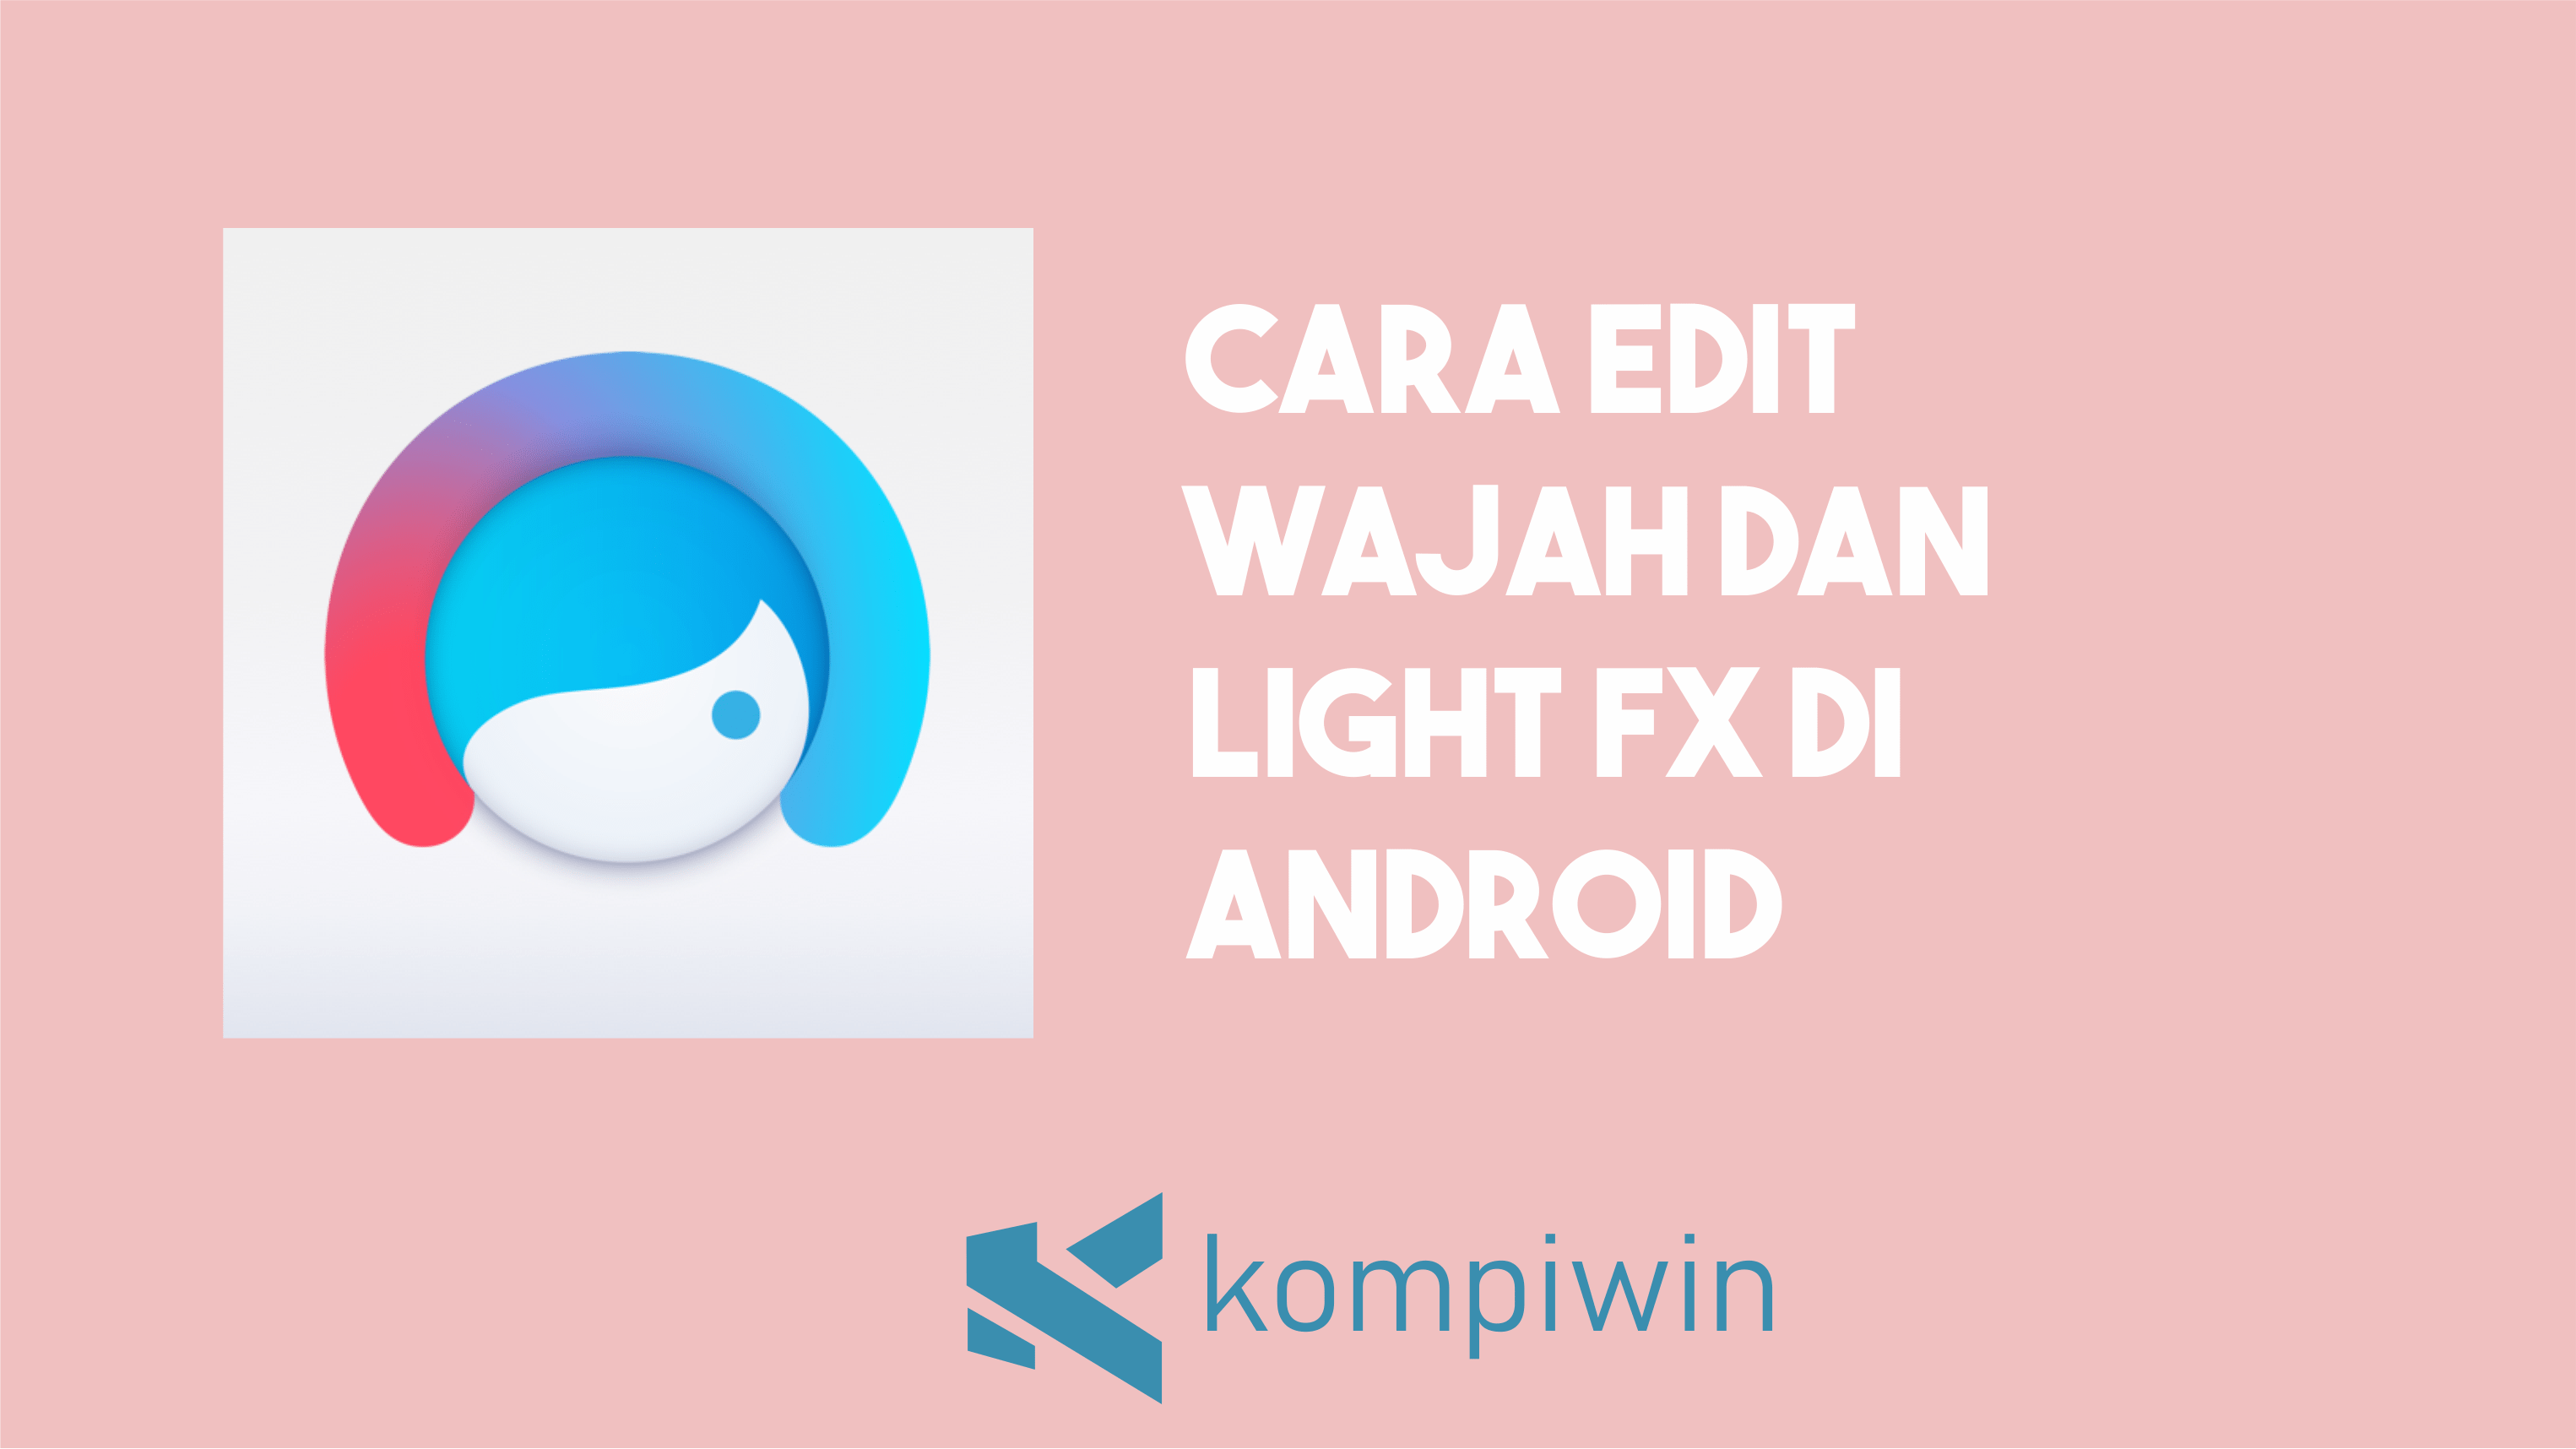 Cara Edit Wajah dan Light FX Di Android